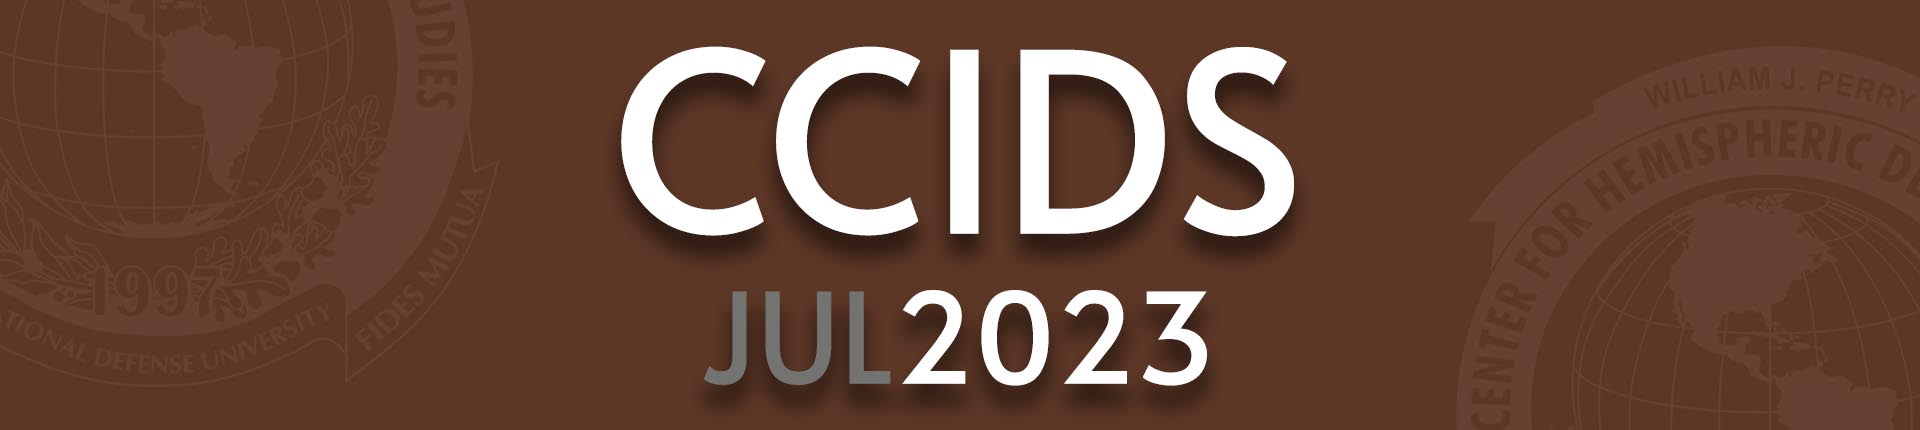 course masthead - CCIDS JUL 2023